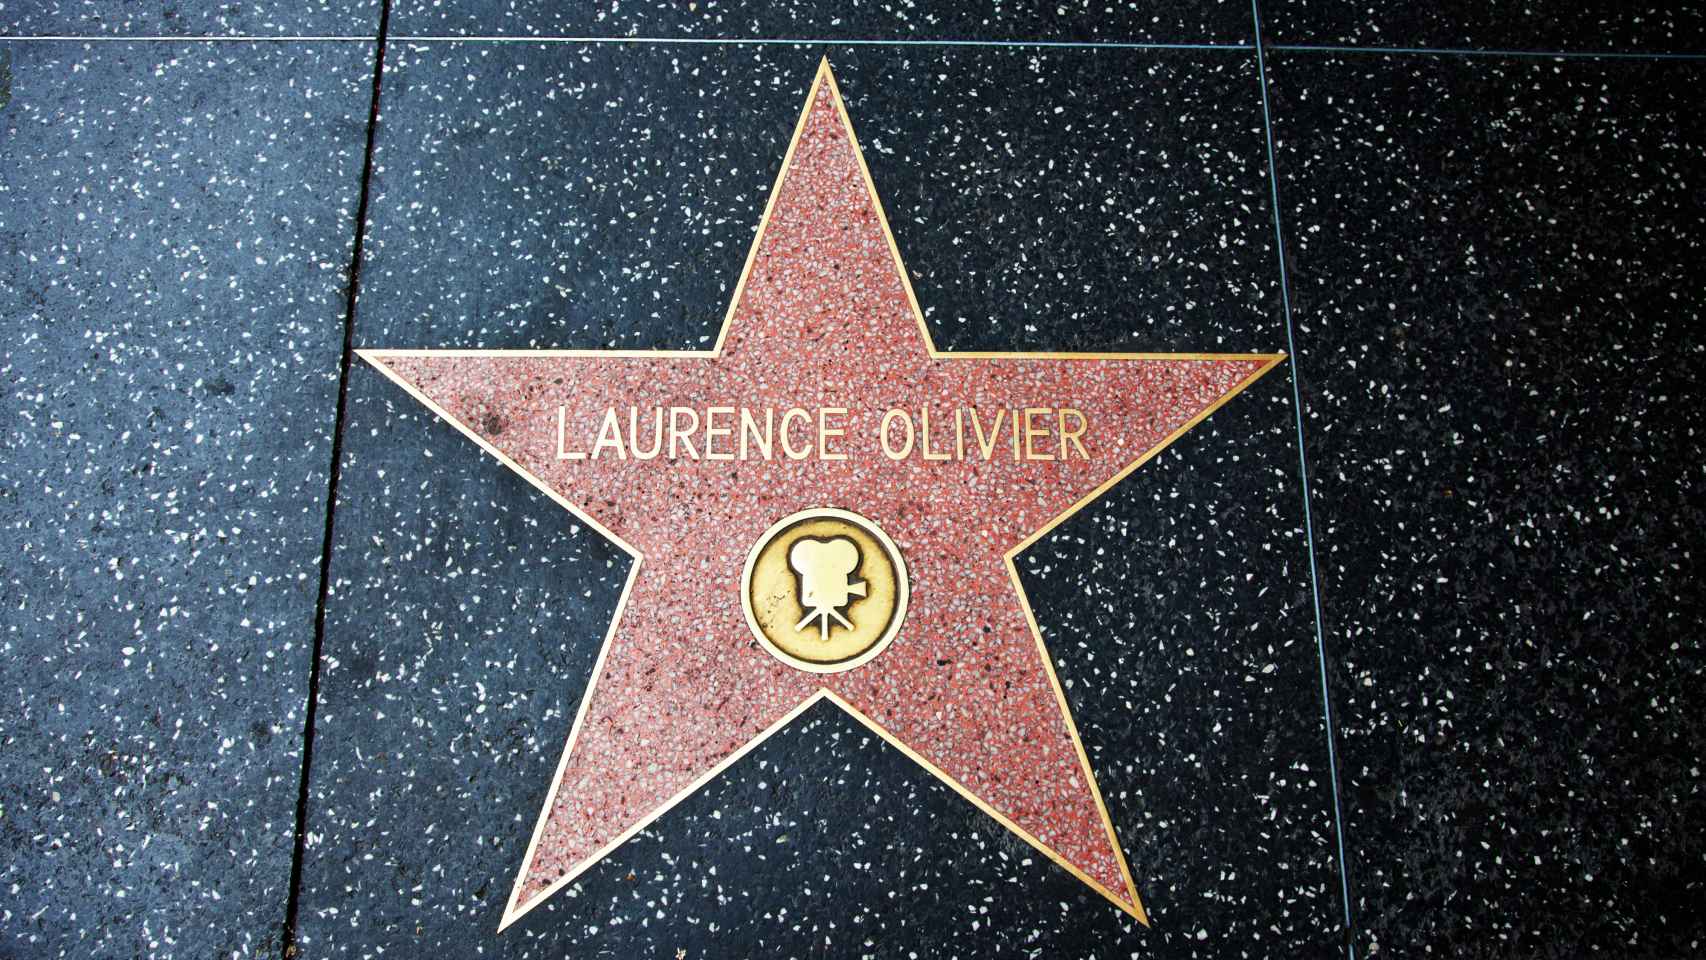 Estrella del paseo de la fama de Laurence Olivier.